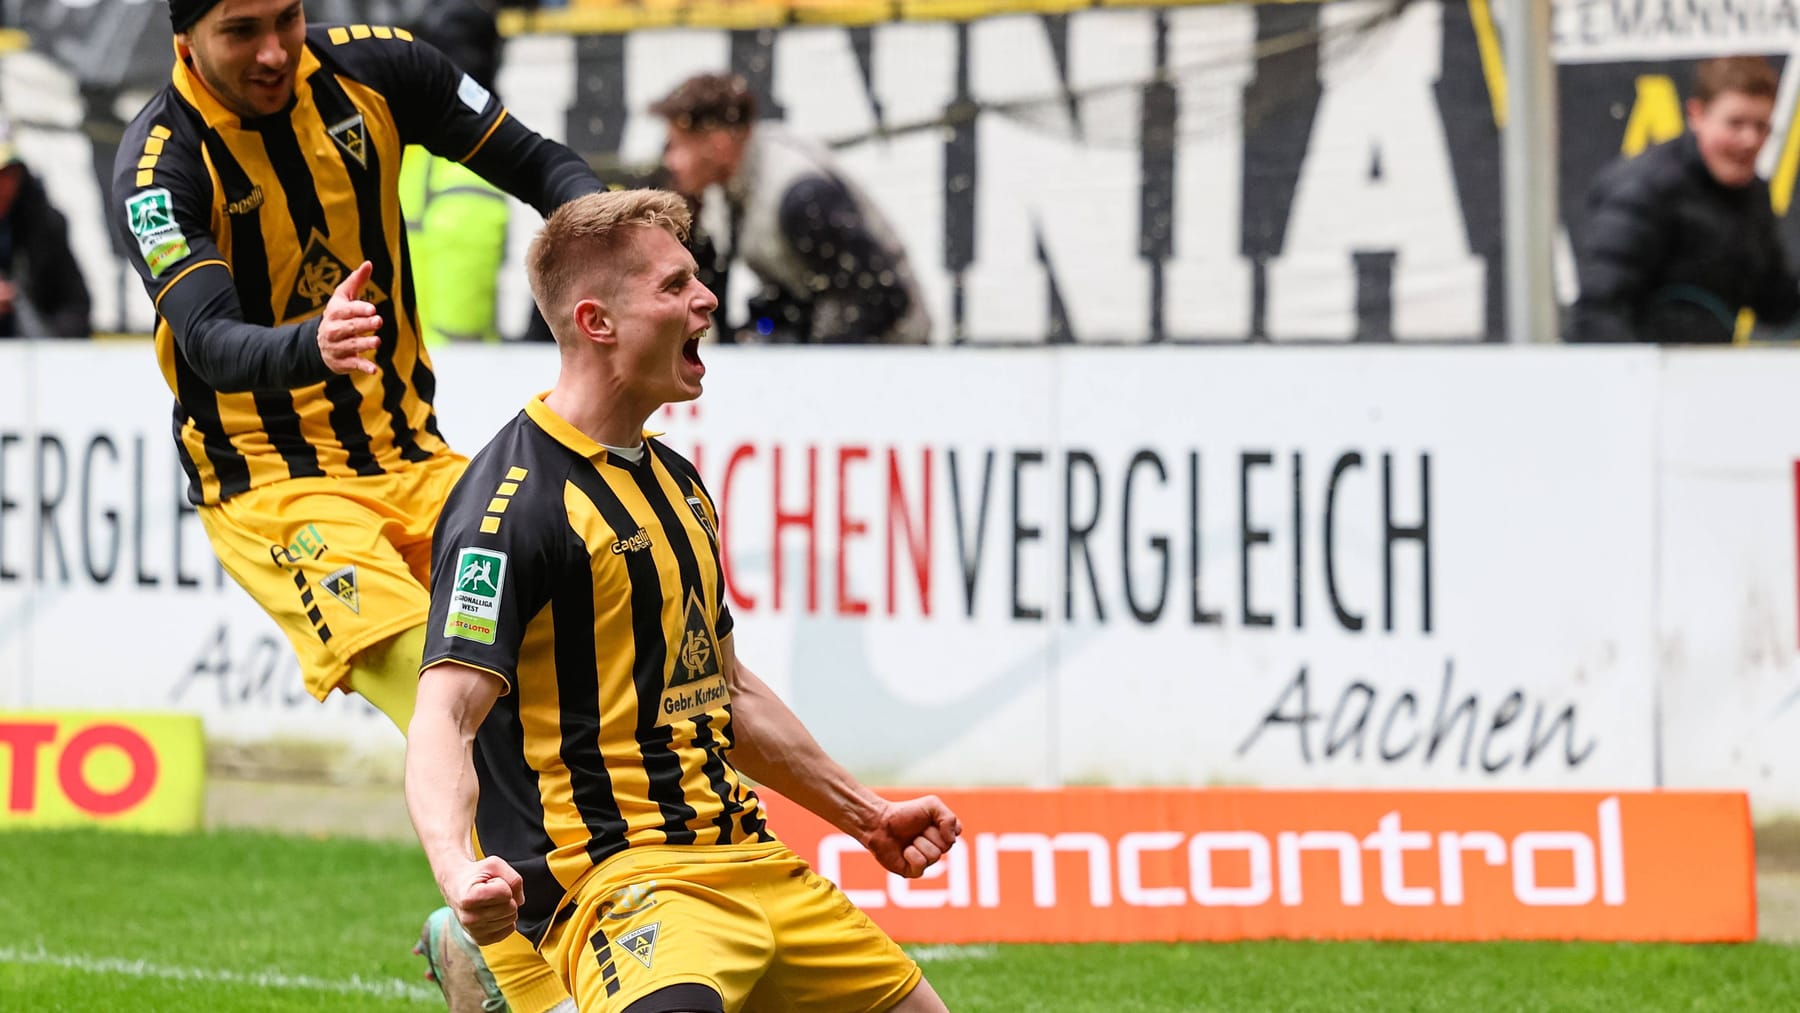 Alemannia Aachen steigt in 3. Liga auf – 18.000 Fans im Schnitt